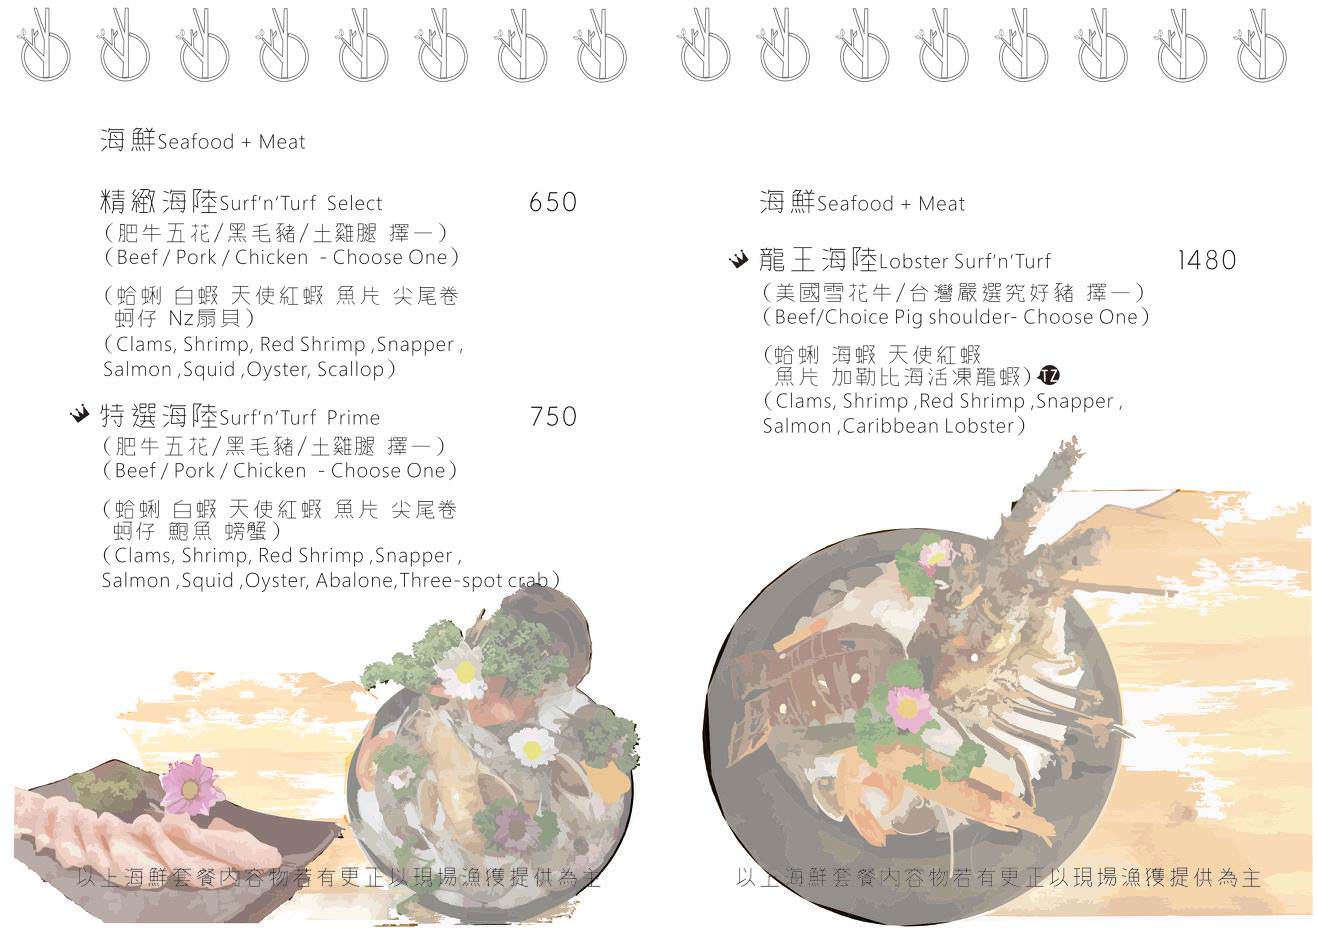 新竹火鍋|湯作鍋物|(巨城百貨旁)文青風火鍋屋~精緻肉片塔|不賣火鍋料~只有天然湯頭、蔬食和高檔肉品!